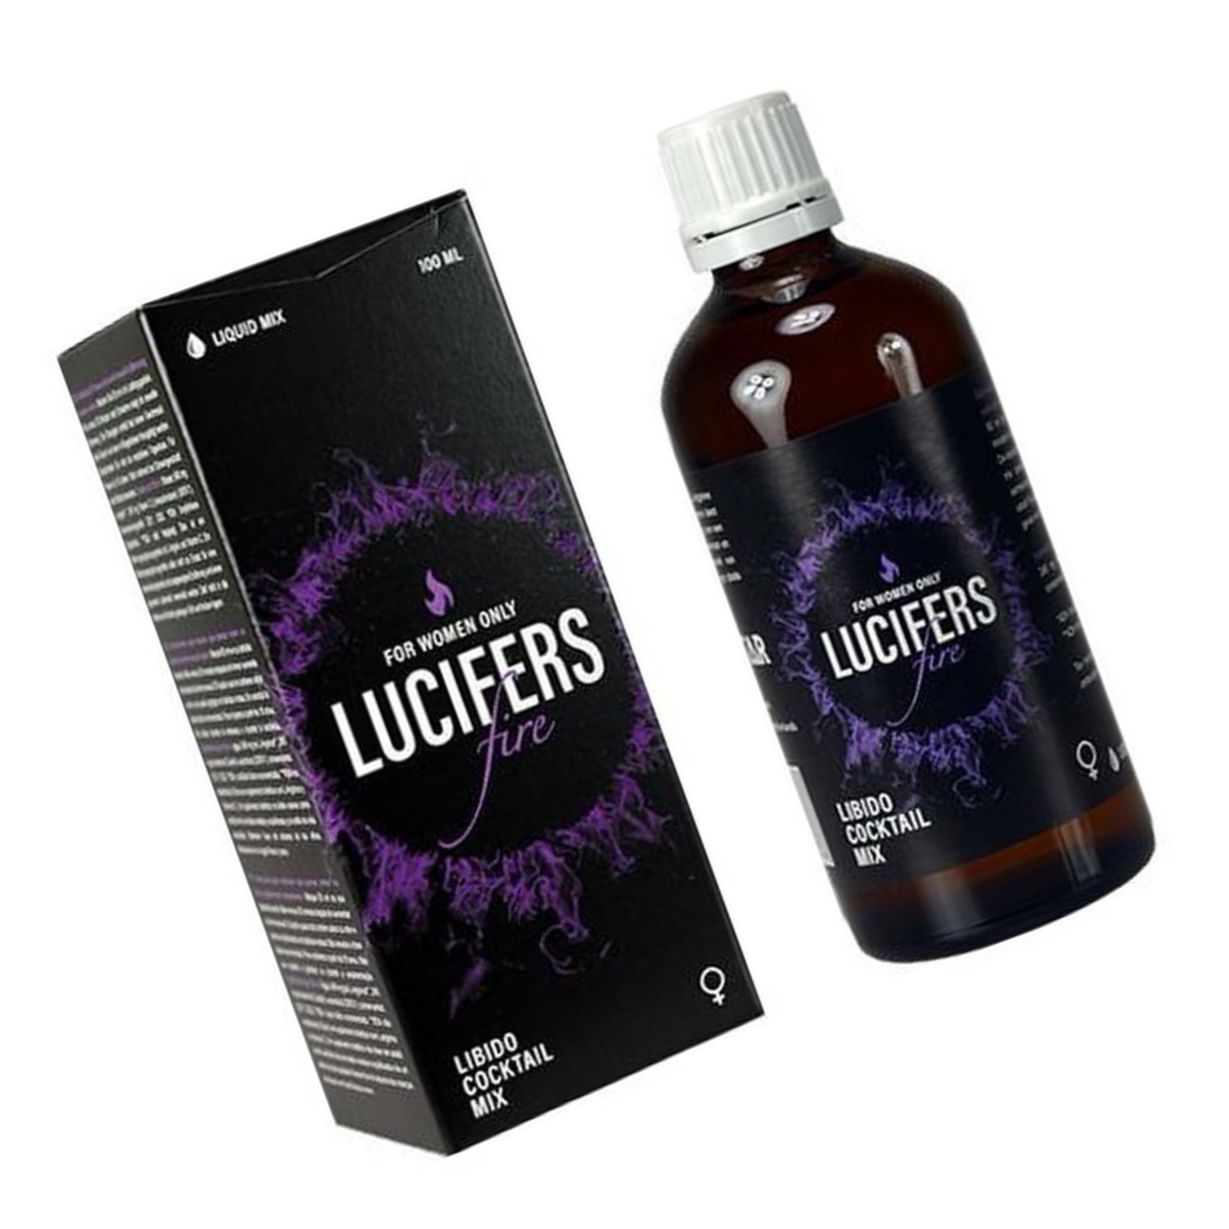 Cocktail Mix Libido Lucifers Fire